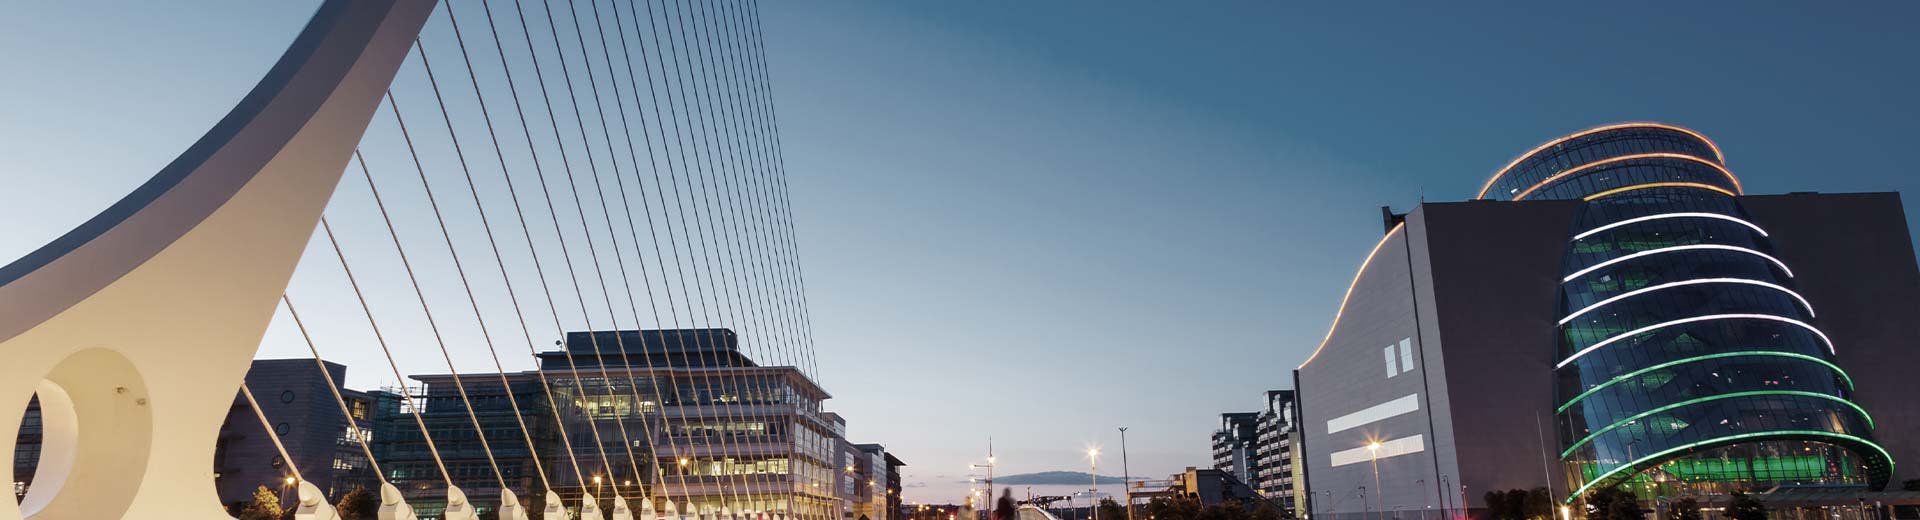 都柏林的商业建筑和一座现代桥梁。